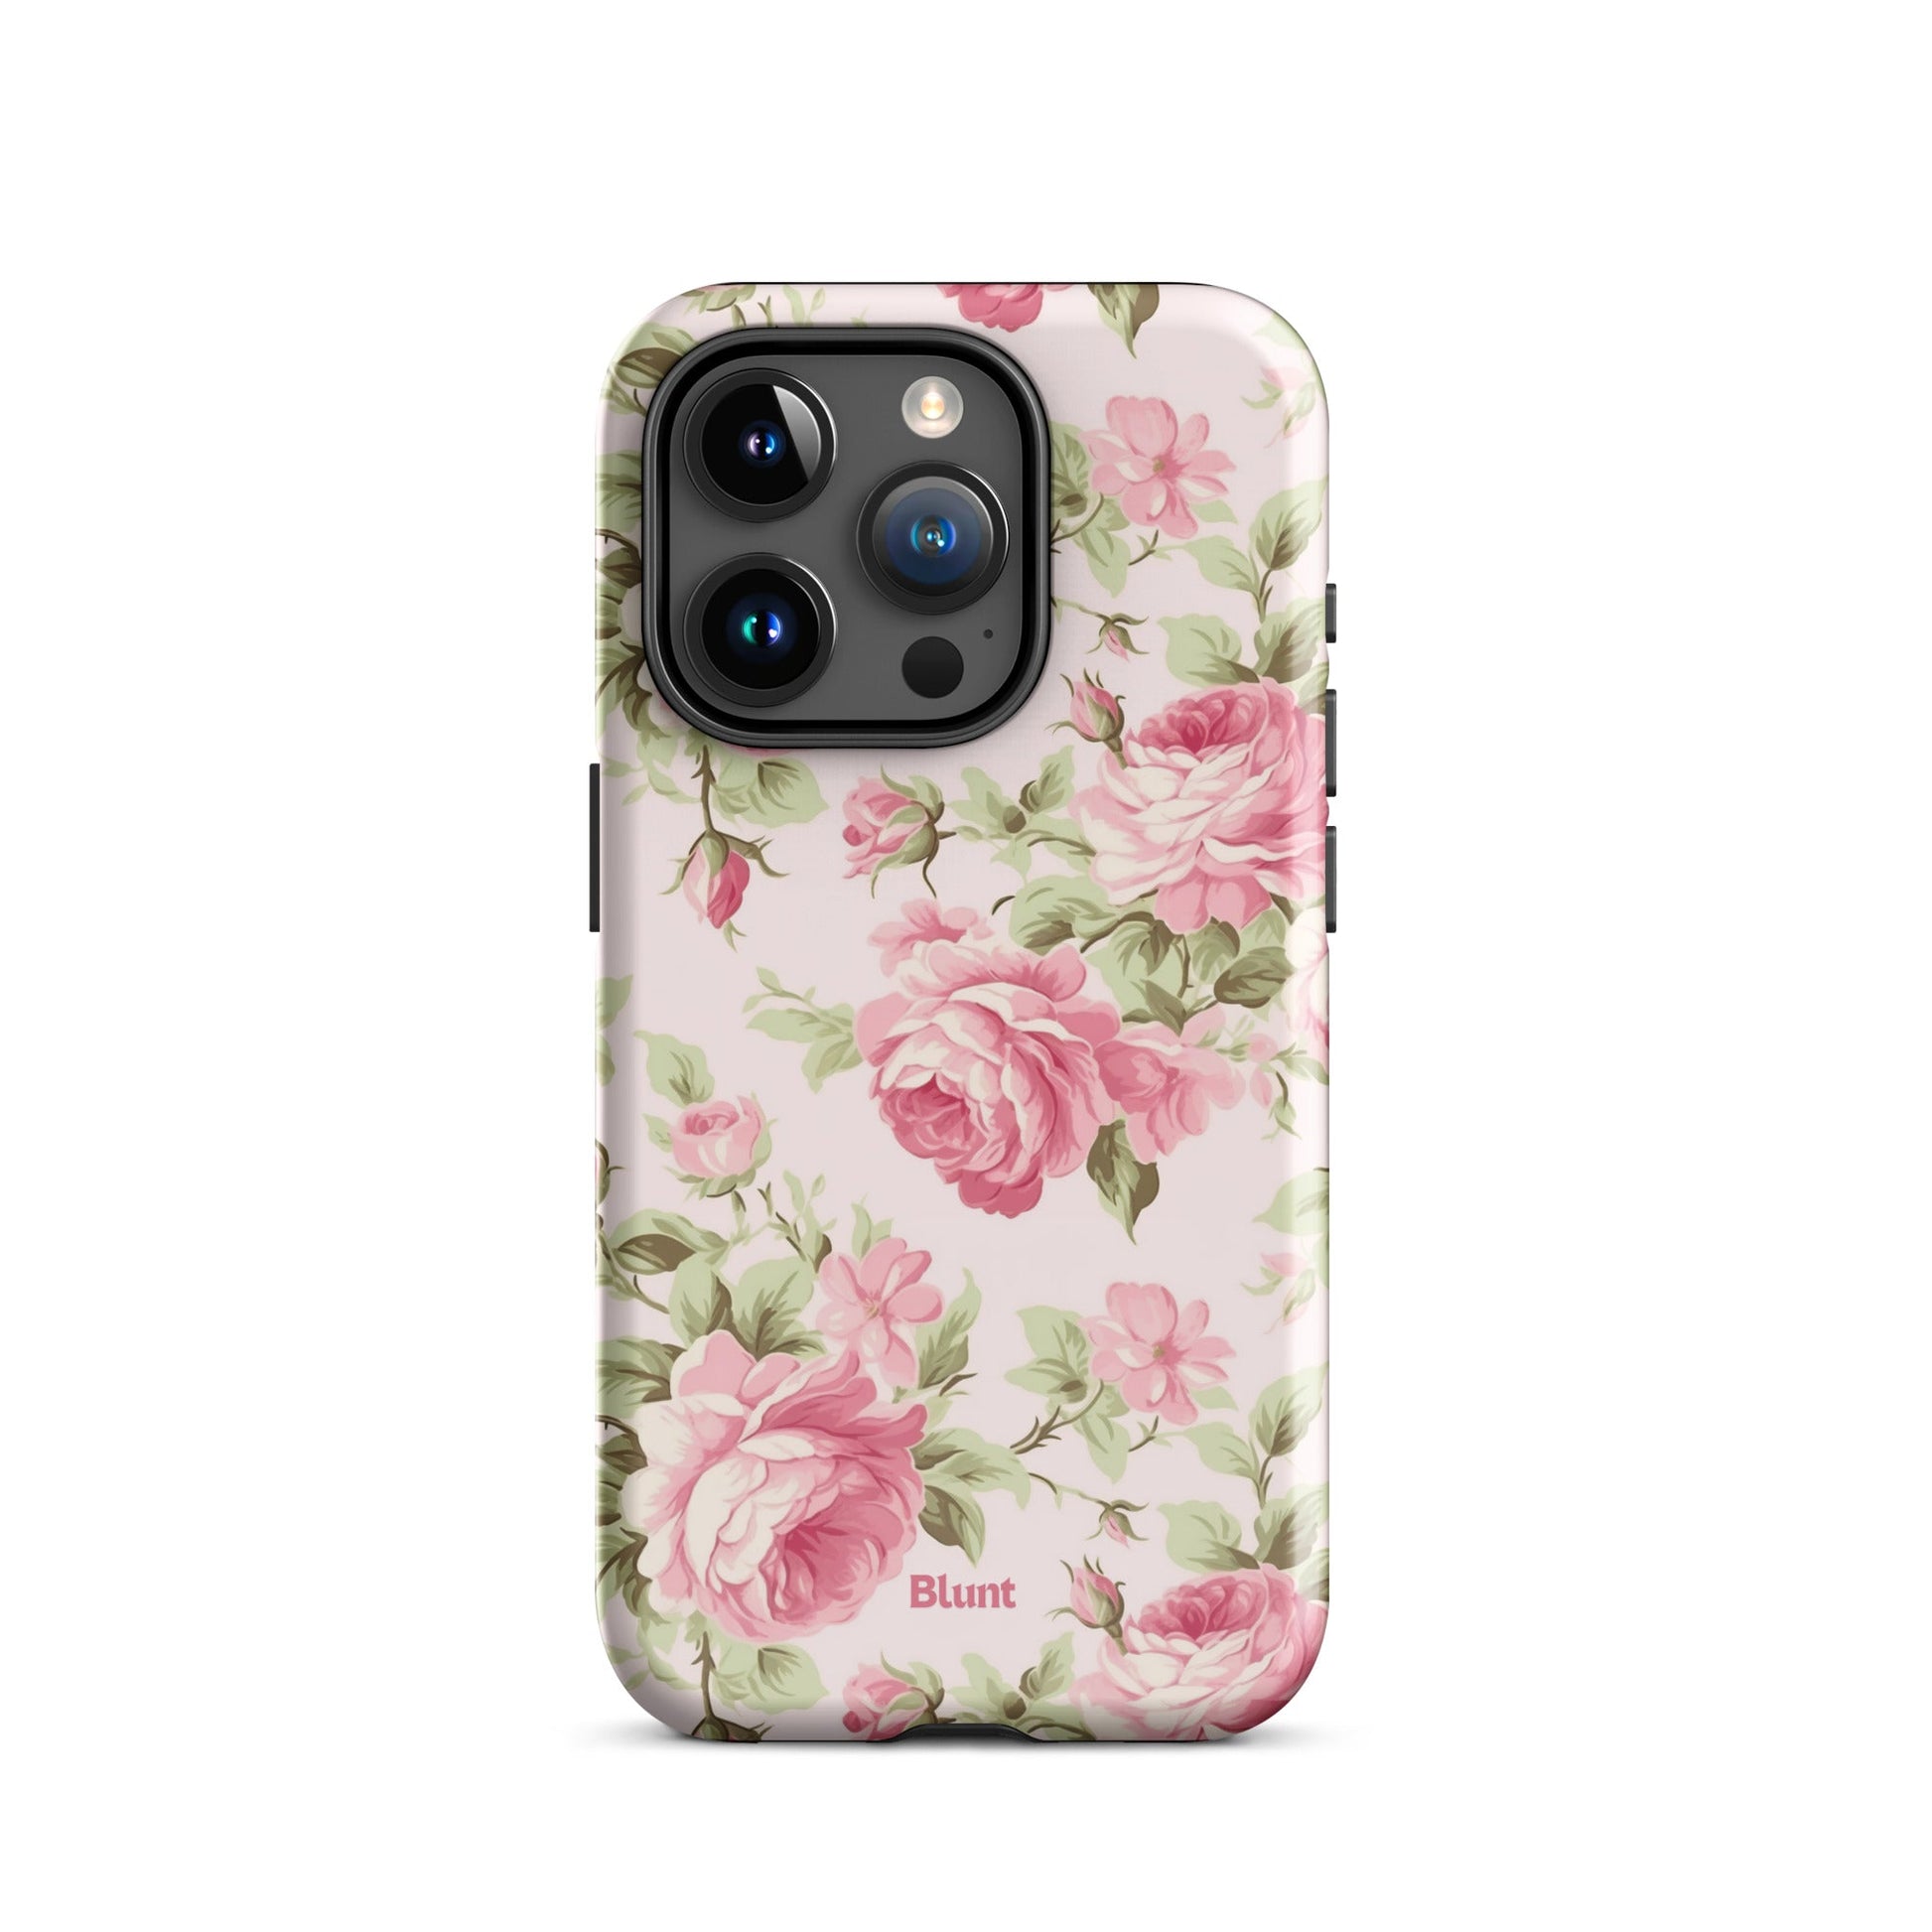 Vintage Rose iPhone Case - blunt cases